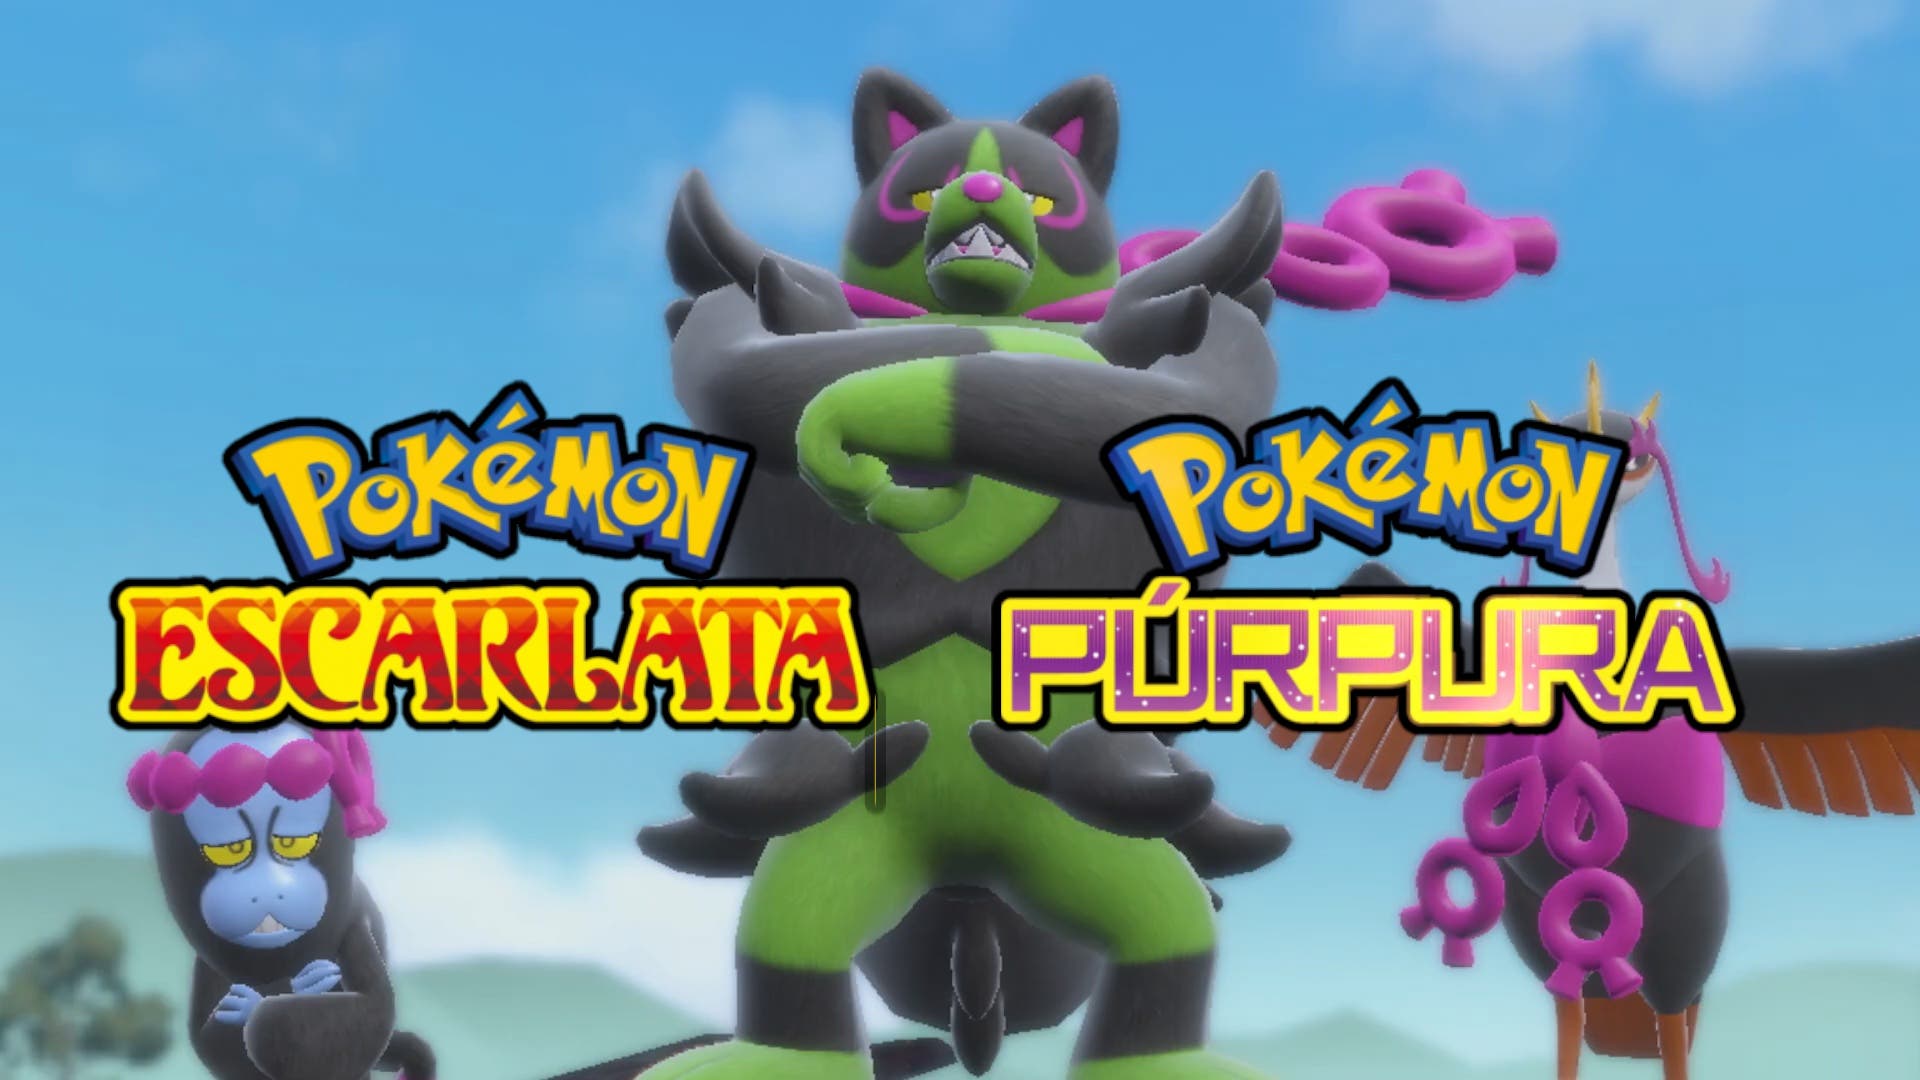 Pokémon Escarlata y Púrpura muestra a los dos nuevos legendarios